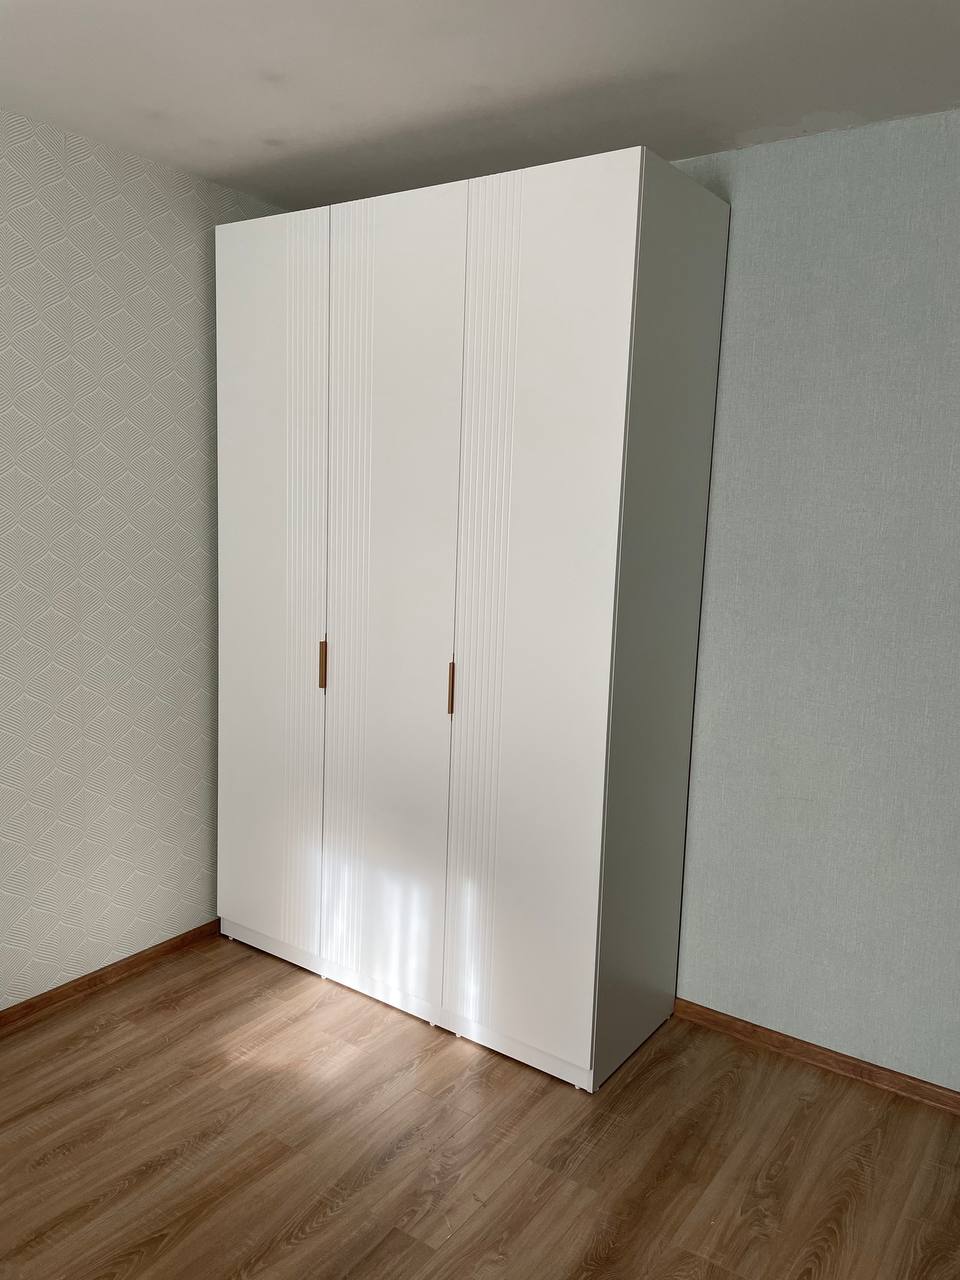 Белый распашной шкаф из МДФ с рифлеными фасадами для спальни, произведённый на заказ в СПб